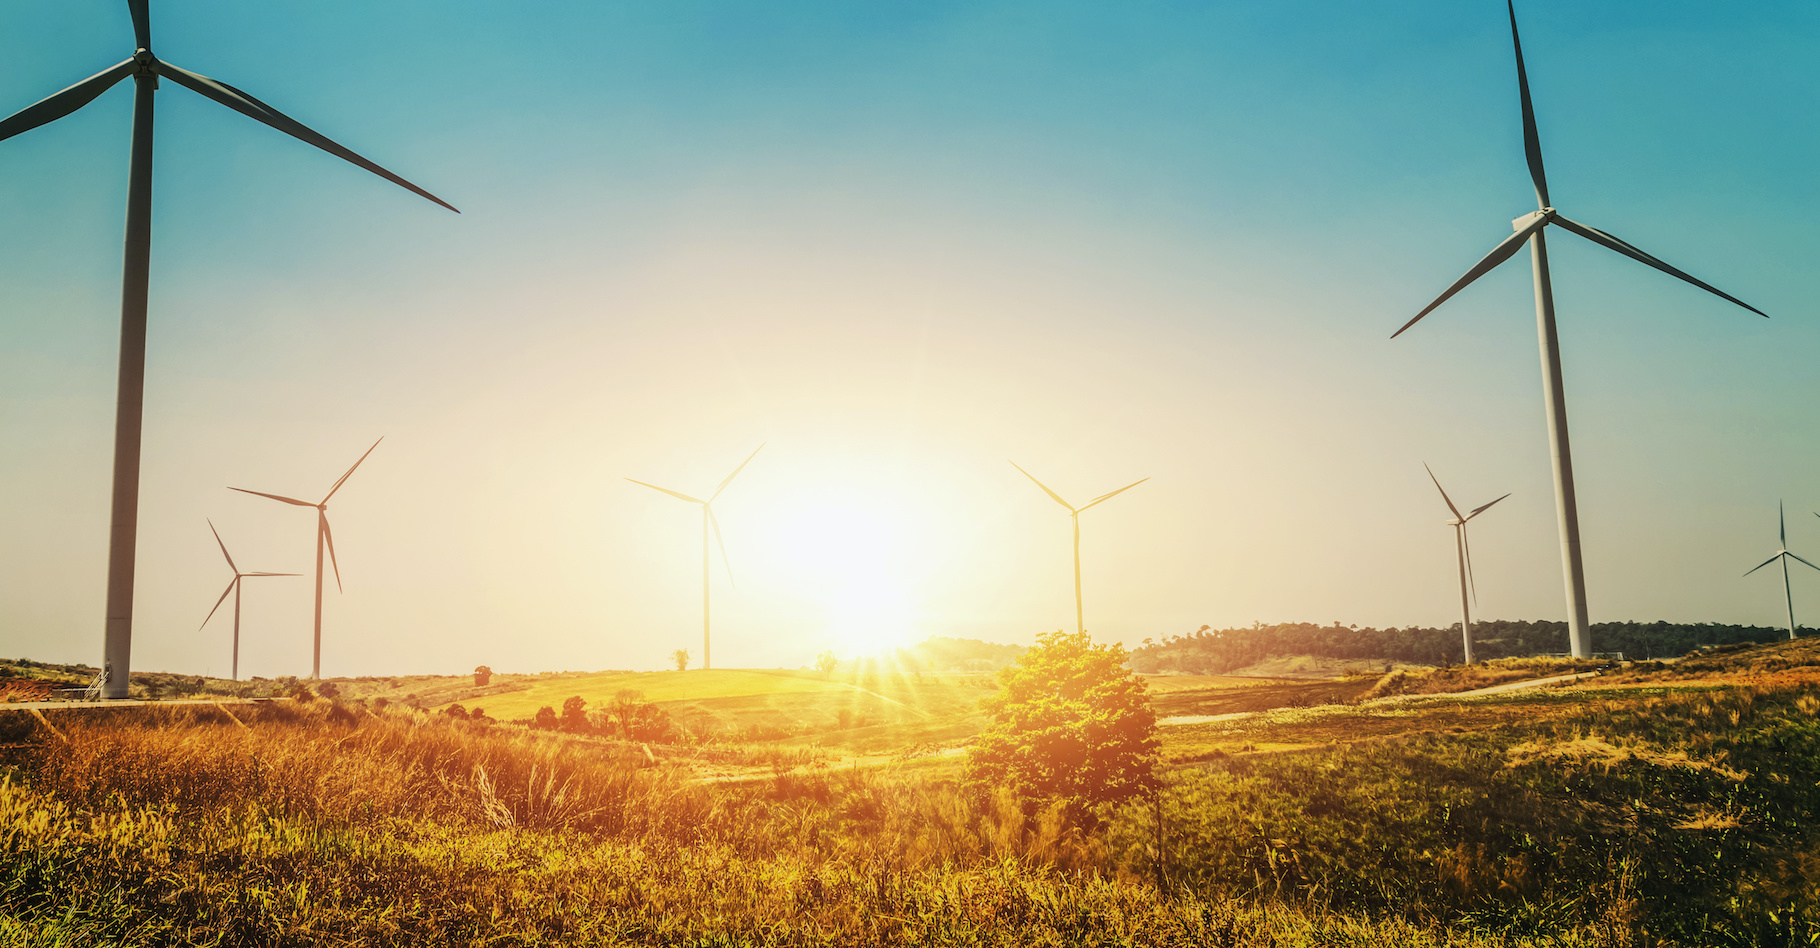 Le dernier rapport de l’Organisation météorologique mondiale (OMM) appelle à un doublement de notre production d’énergie renouvelable d’ici 2030. Sans quoi, c’est tout notre système énergétique qui pourrait se trouver déstabilisé. © lovelyday12, Adobe Stock